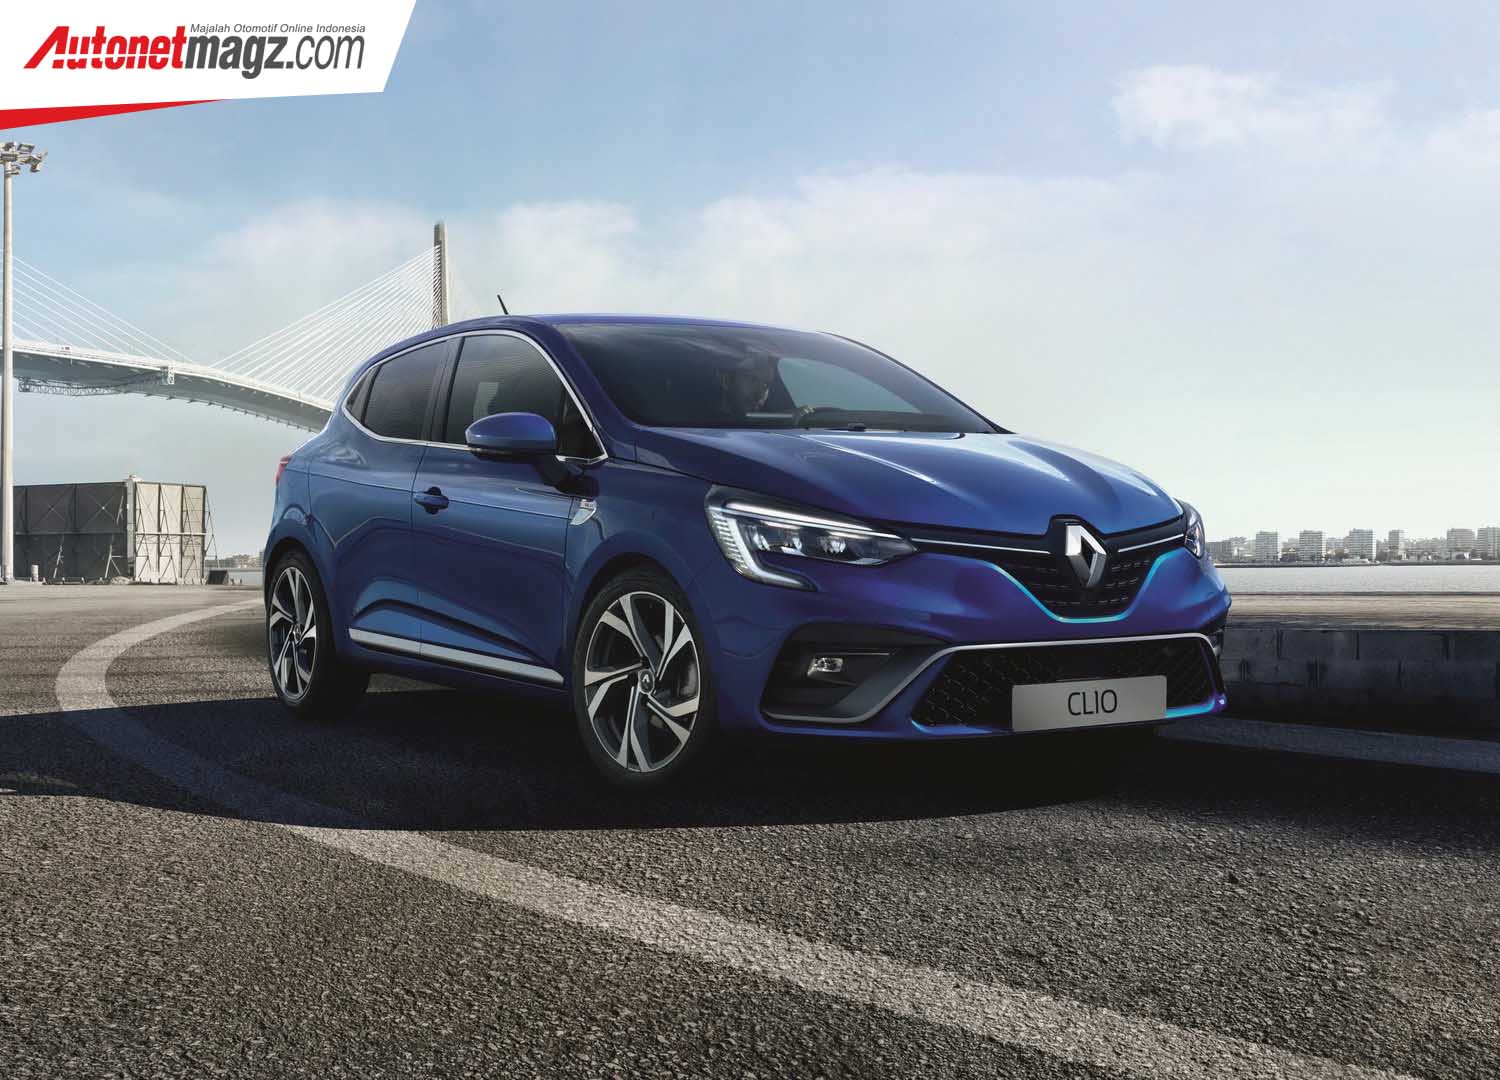 Berita, Renault Clio 2020: Renault Clio 2020 Diluncurkan, Cakepnya Kebangetan!